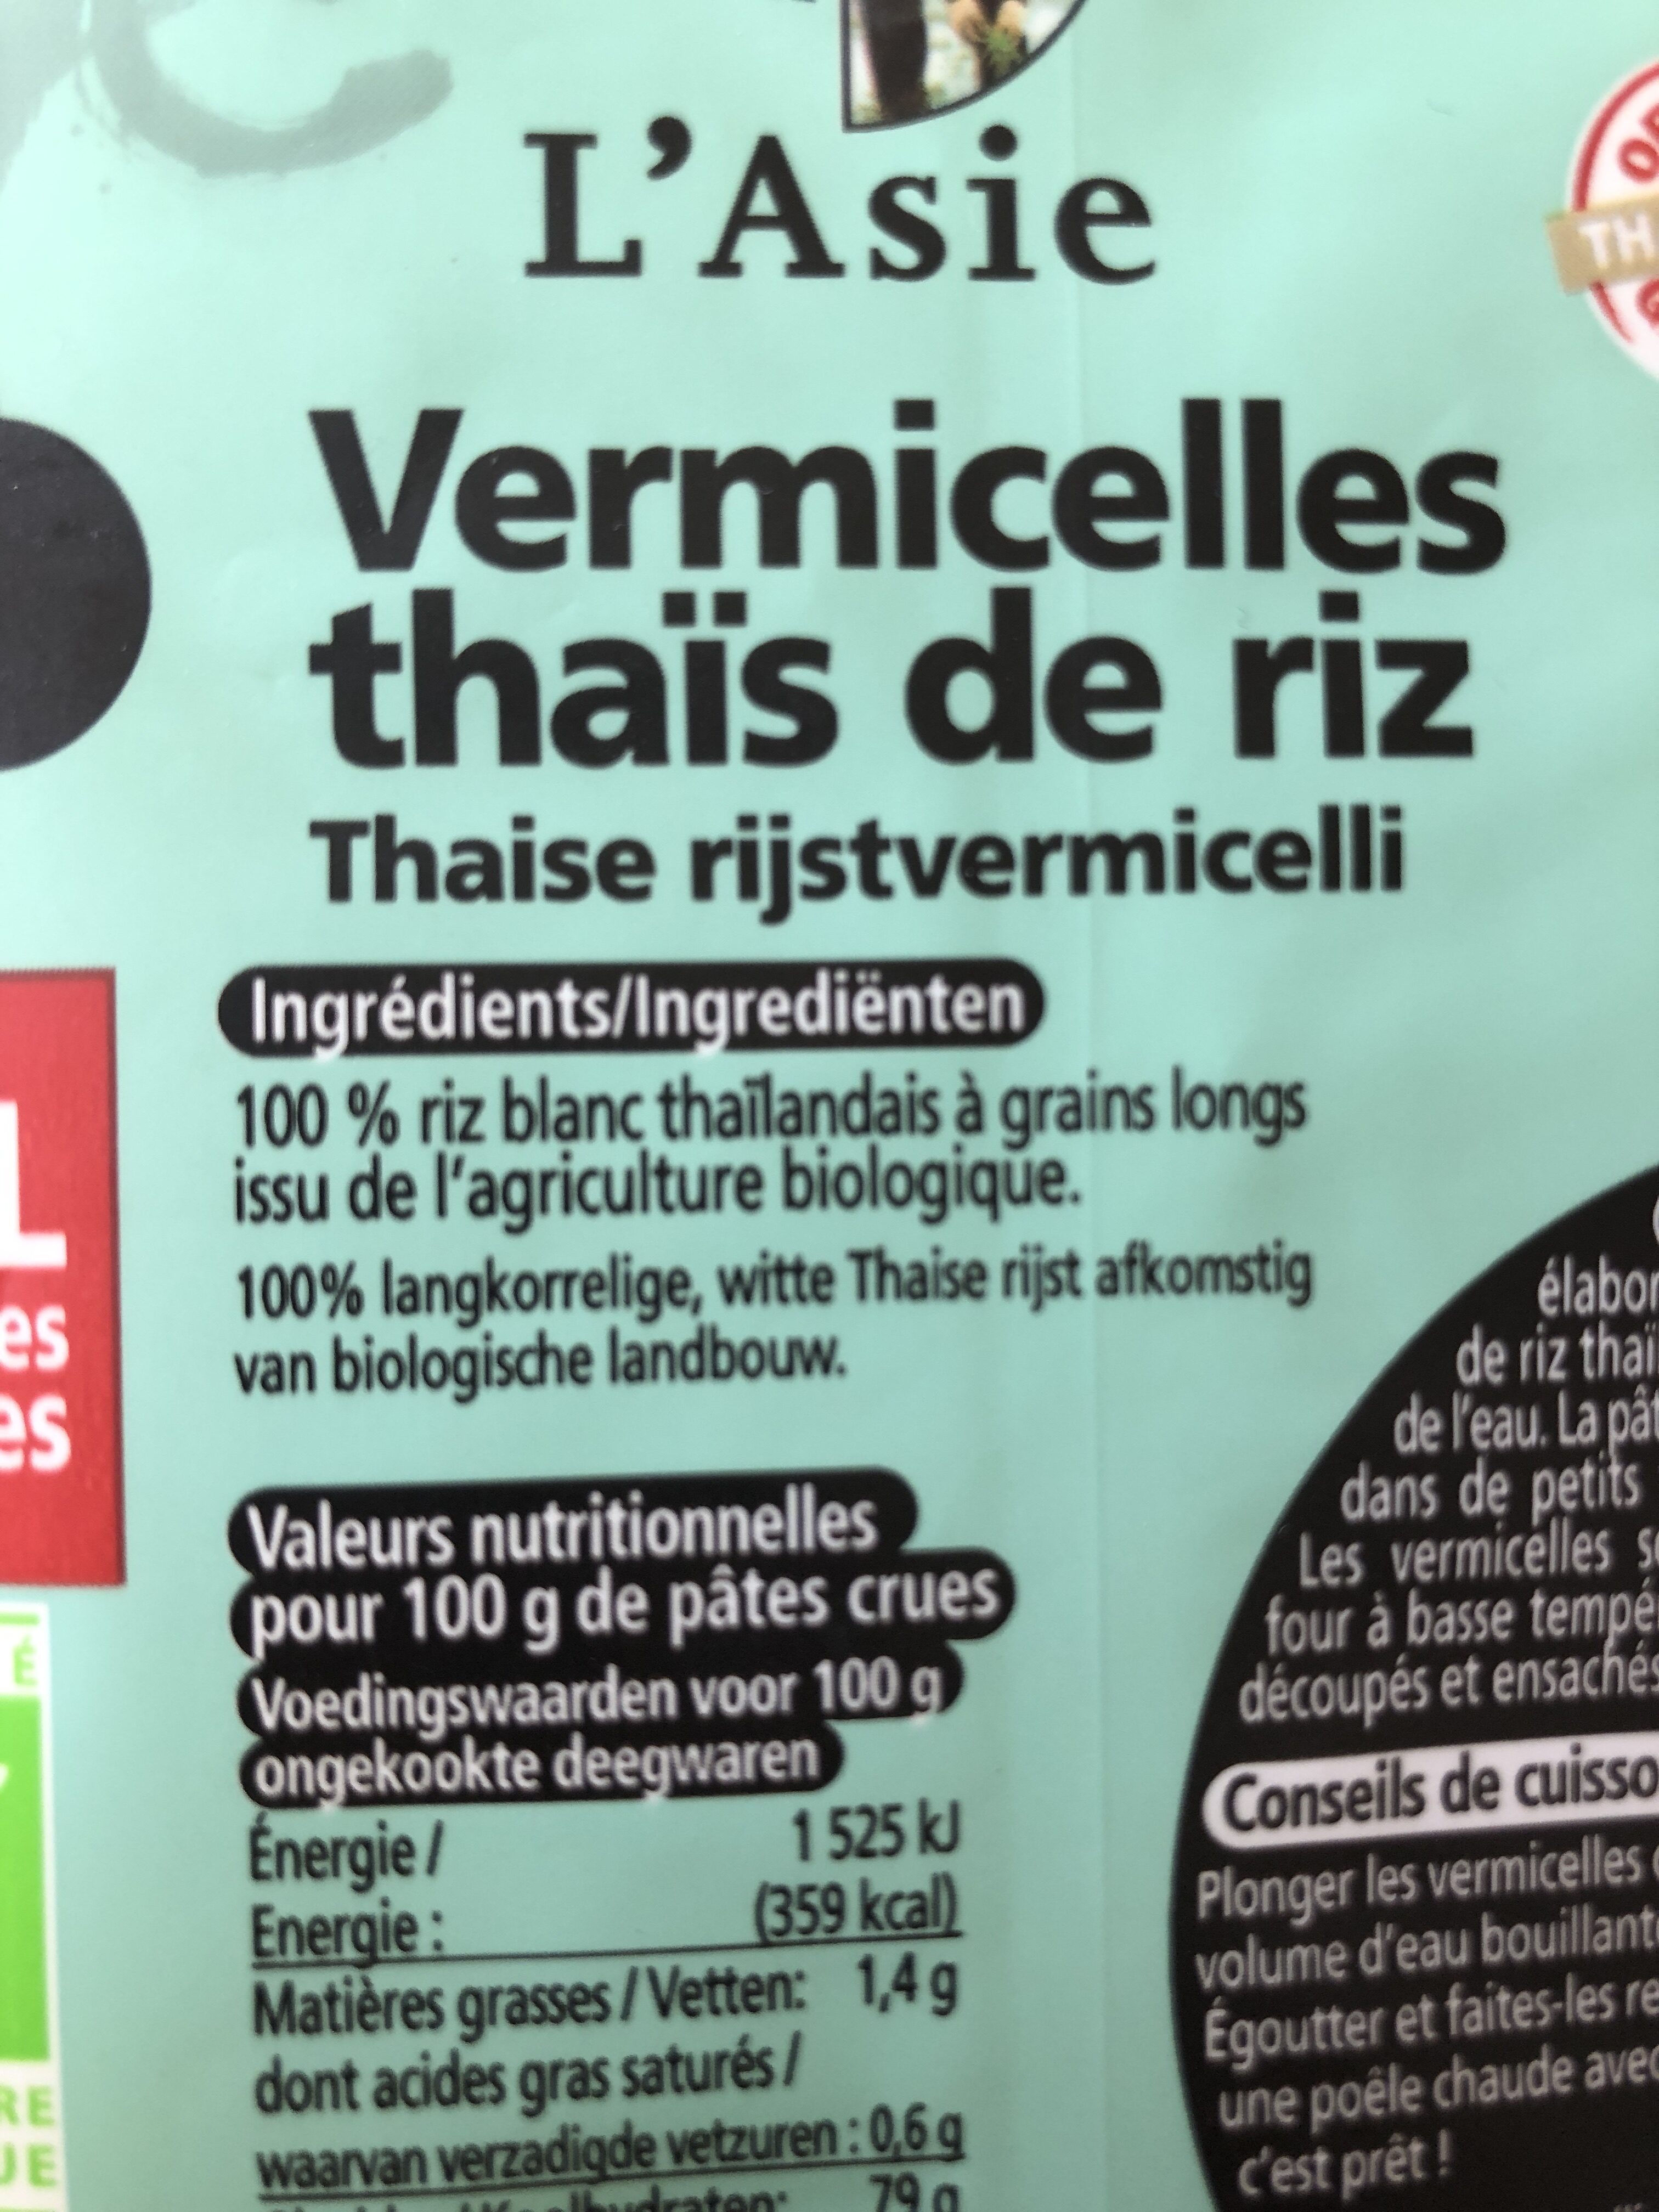 Vermicelles thaï de riz - Ingredients - fr